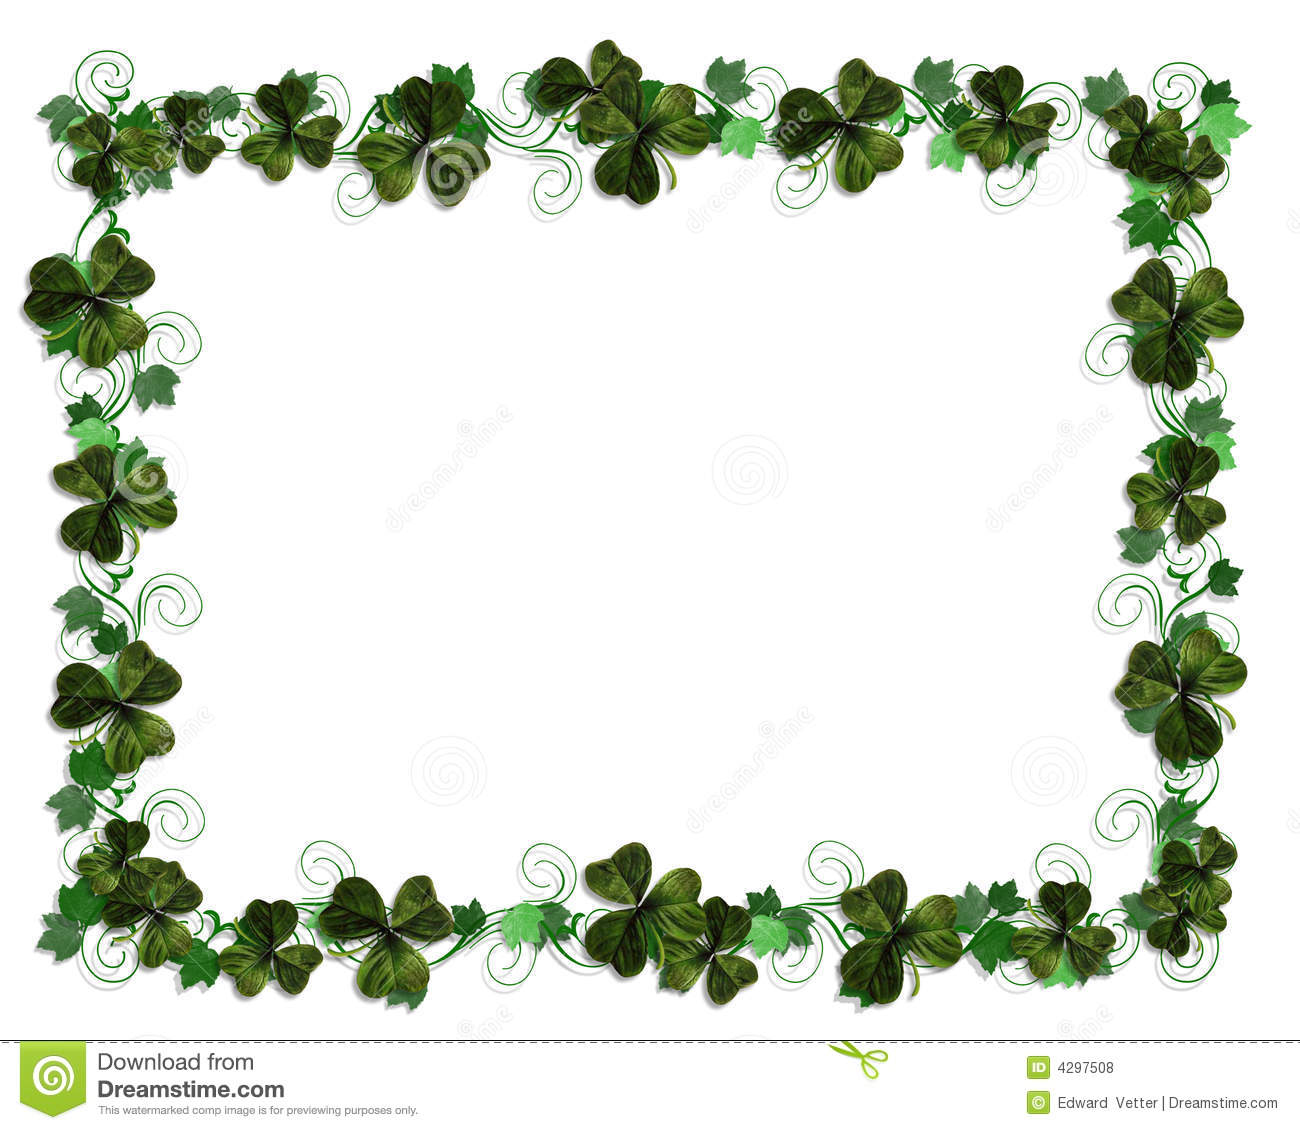 Irish Border Ivy And Shamrocks Royalty Free Stock Photos Image